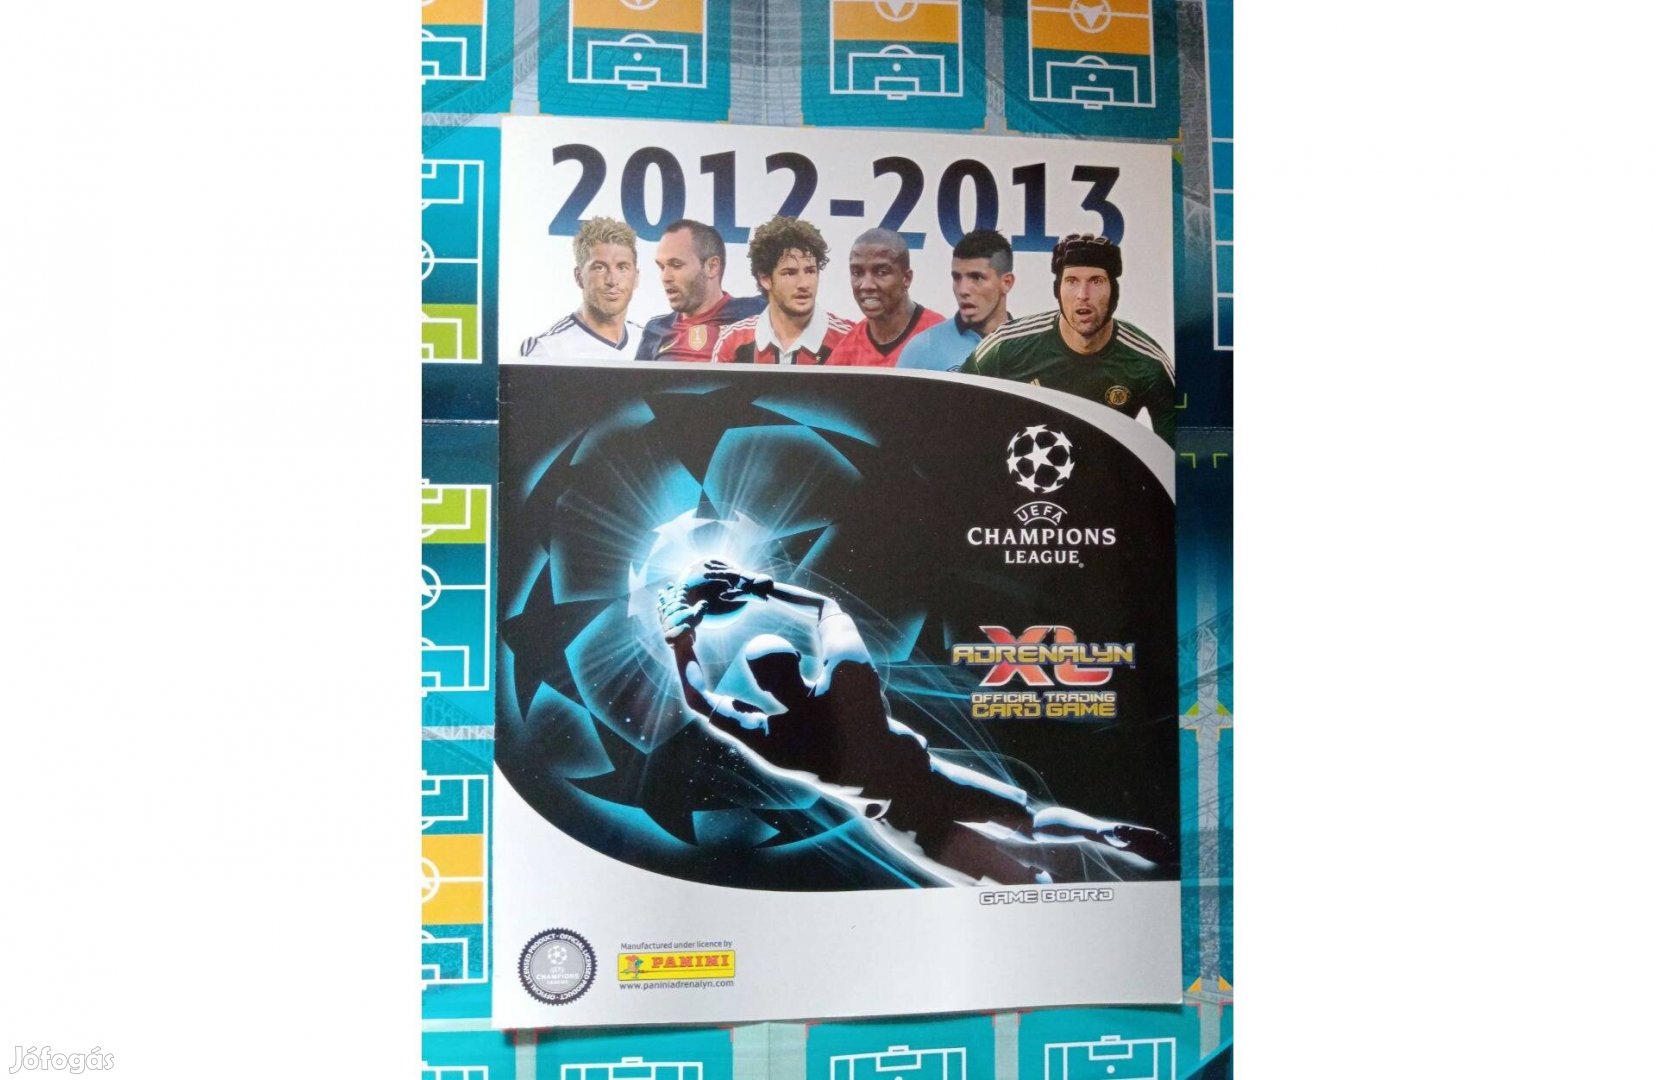 Champions League 2012-2013 Adrenalyn poszter és kártyatartó